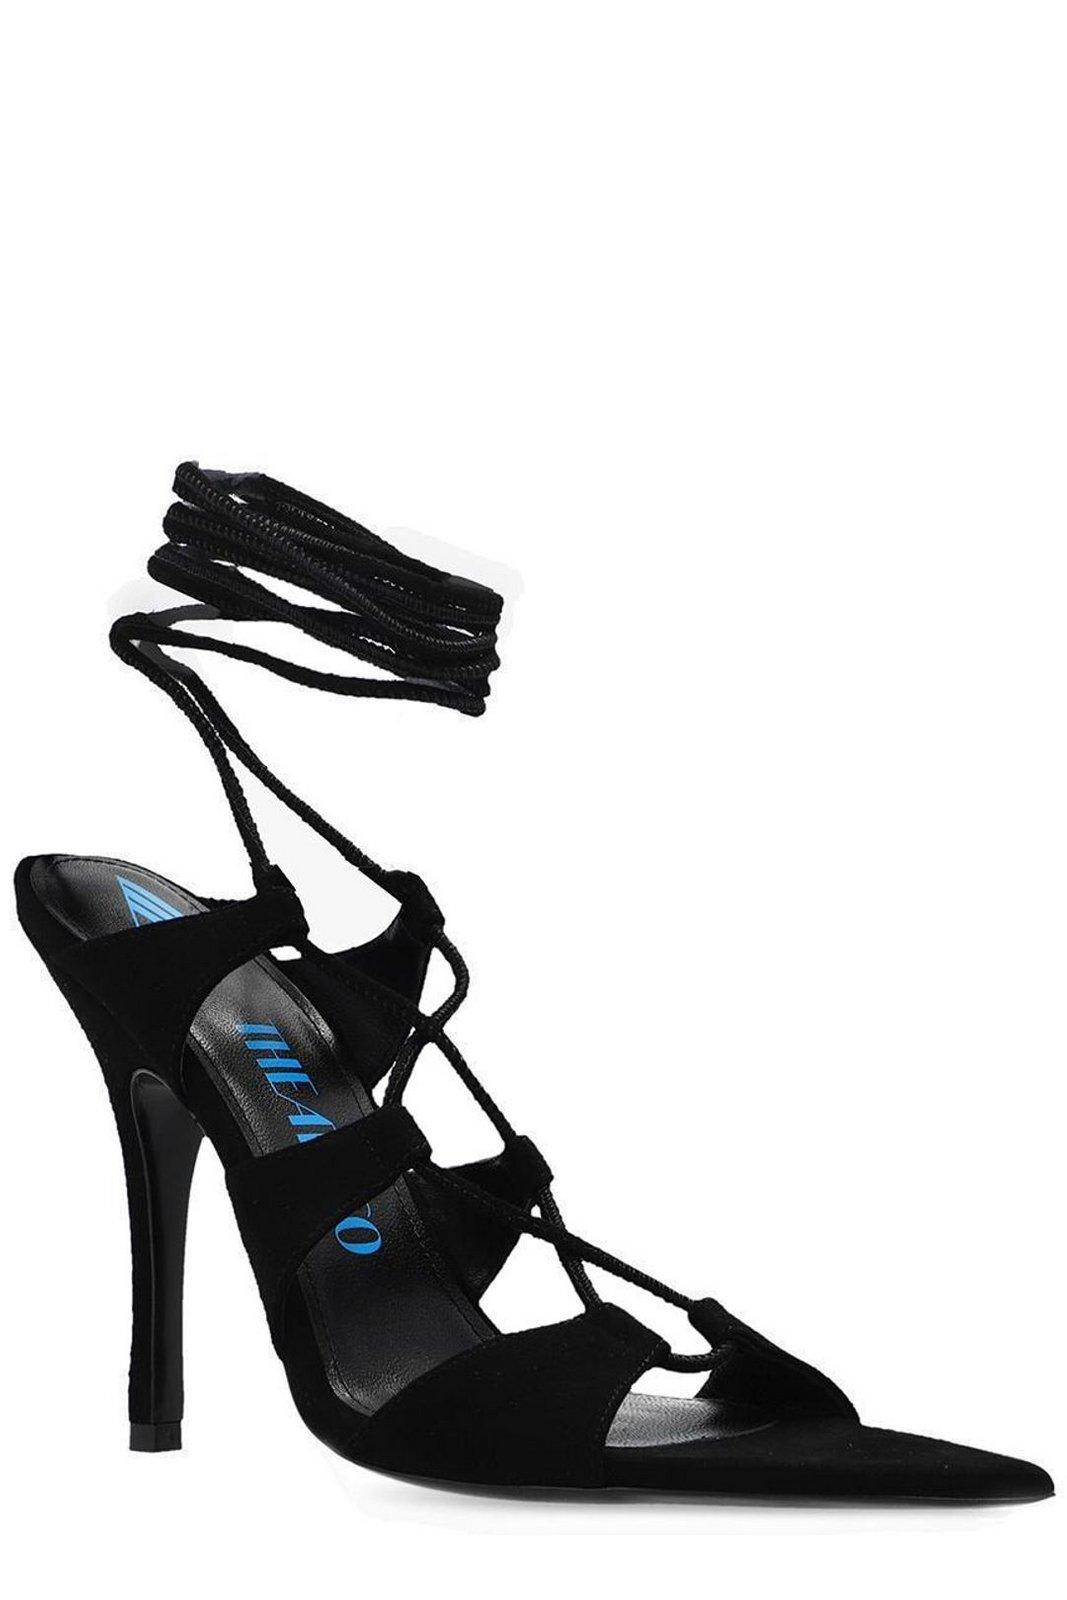 Shop Attico Renee Lace-up Ankle Strap Sandals